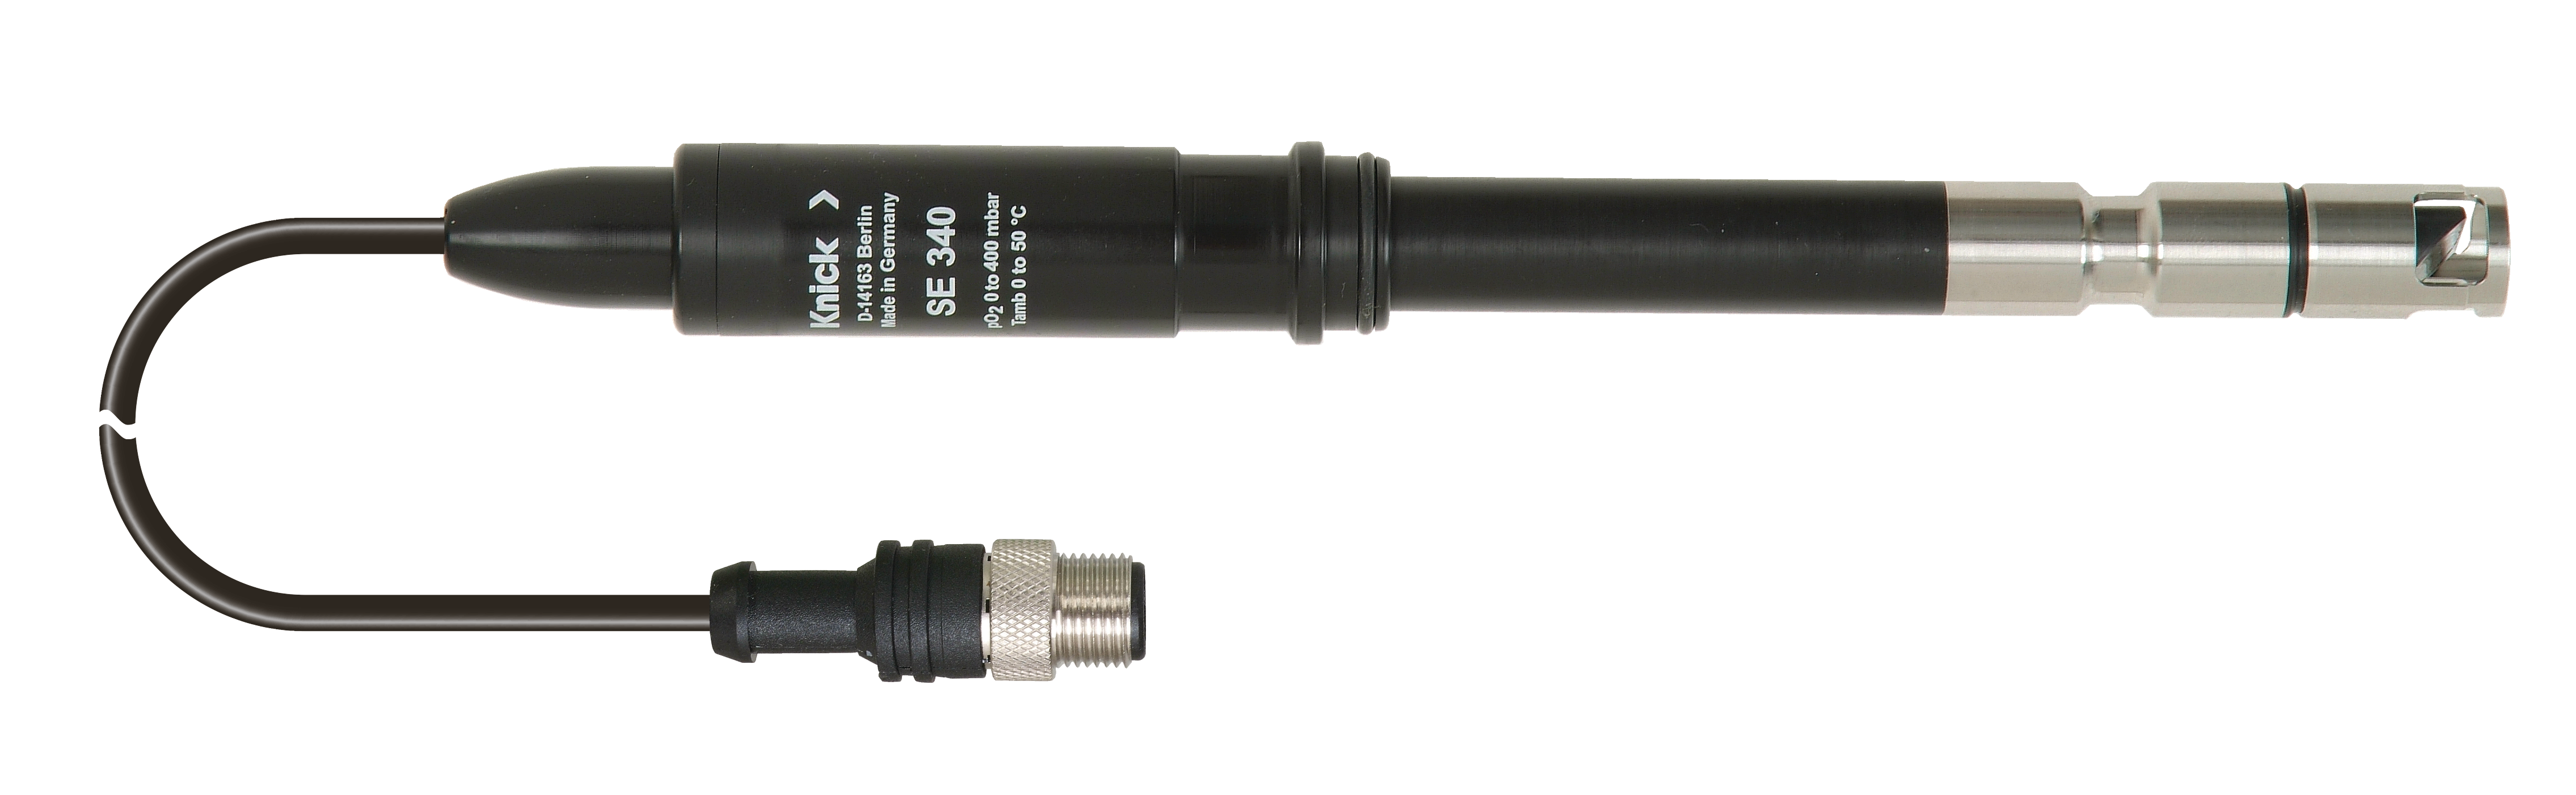 SE340 Optischer Sauerstoffsensor | Digital | POM/Edelstahlgehäuse | Durchflussunabhängig